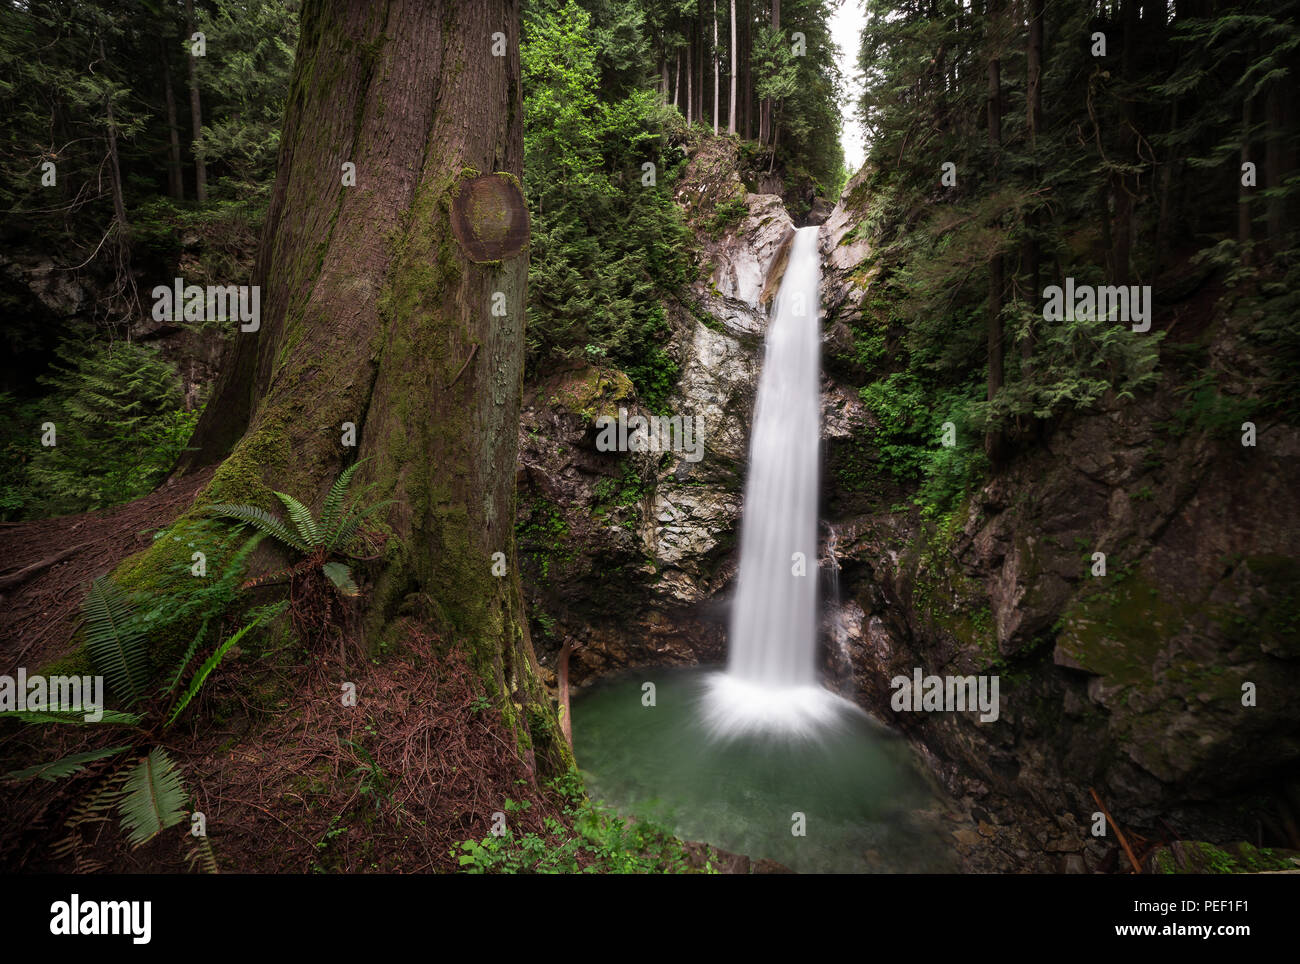 Wasserfall in einem immergrünen Wald mit Farnen und ein Baum im Vordergrund Casacade fällt, Mission, BC. Stockfoto